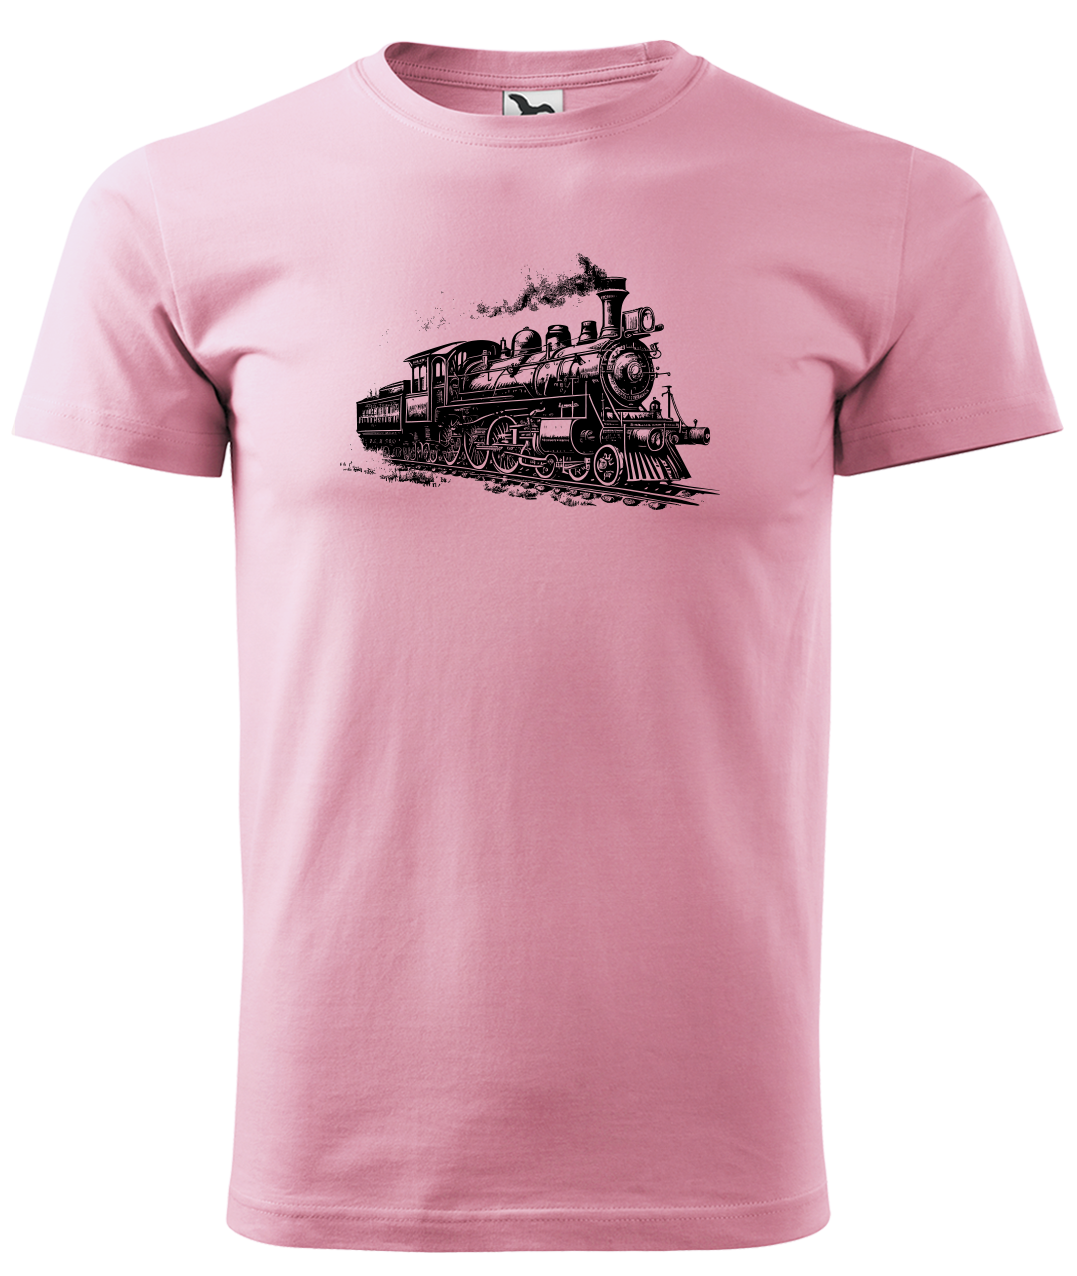 Dětské tričko s vlakem - Stará lokomotiva Velikost: 6 let / 122 cm, Barva: Růžová (30)